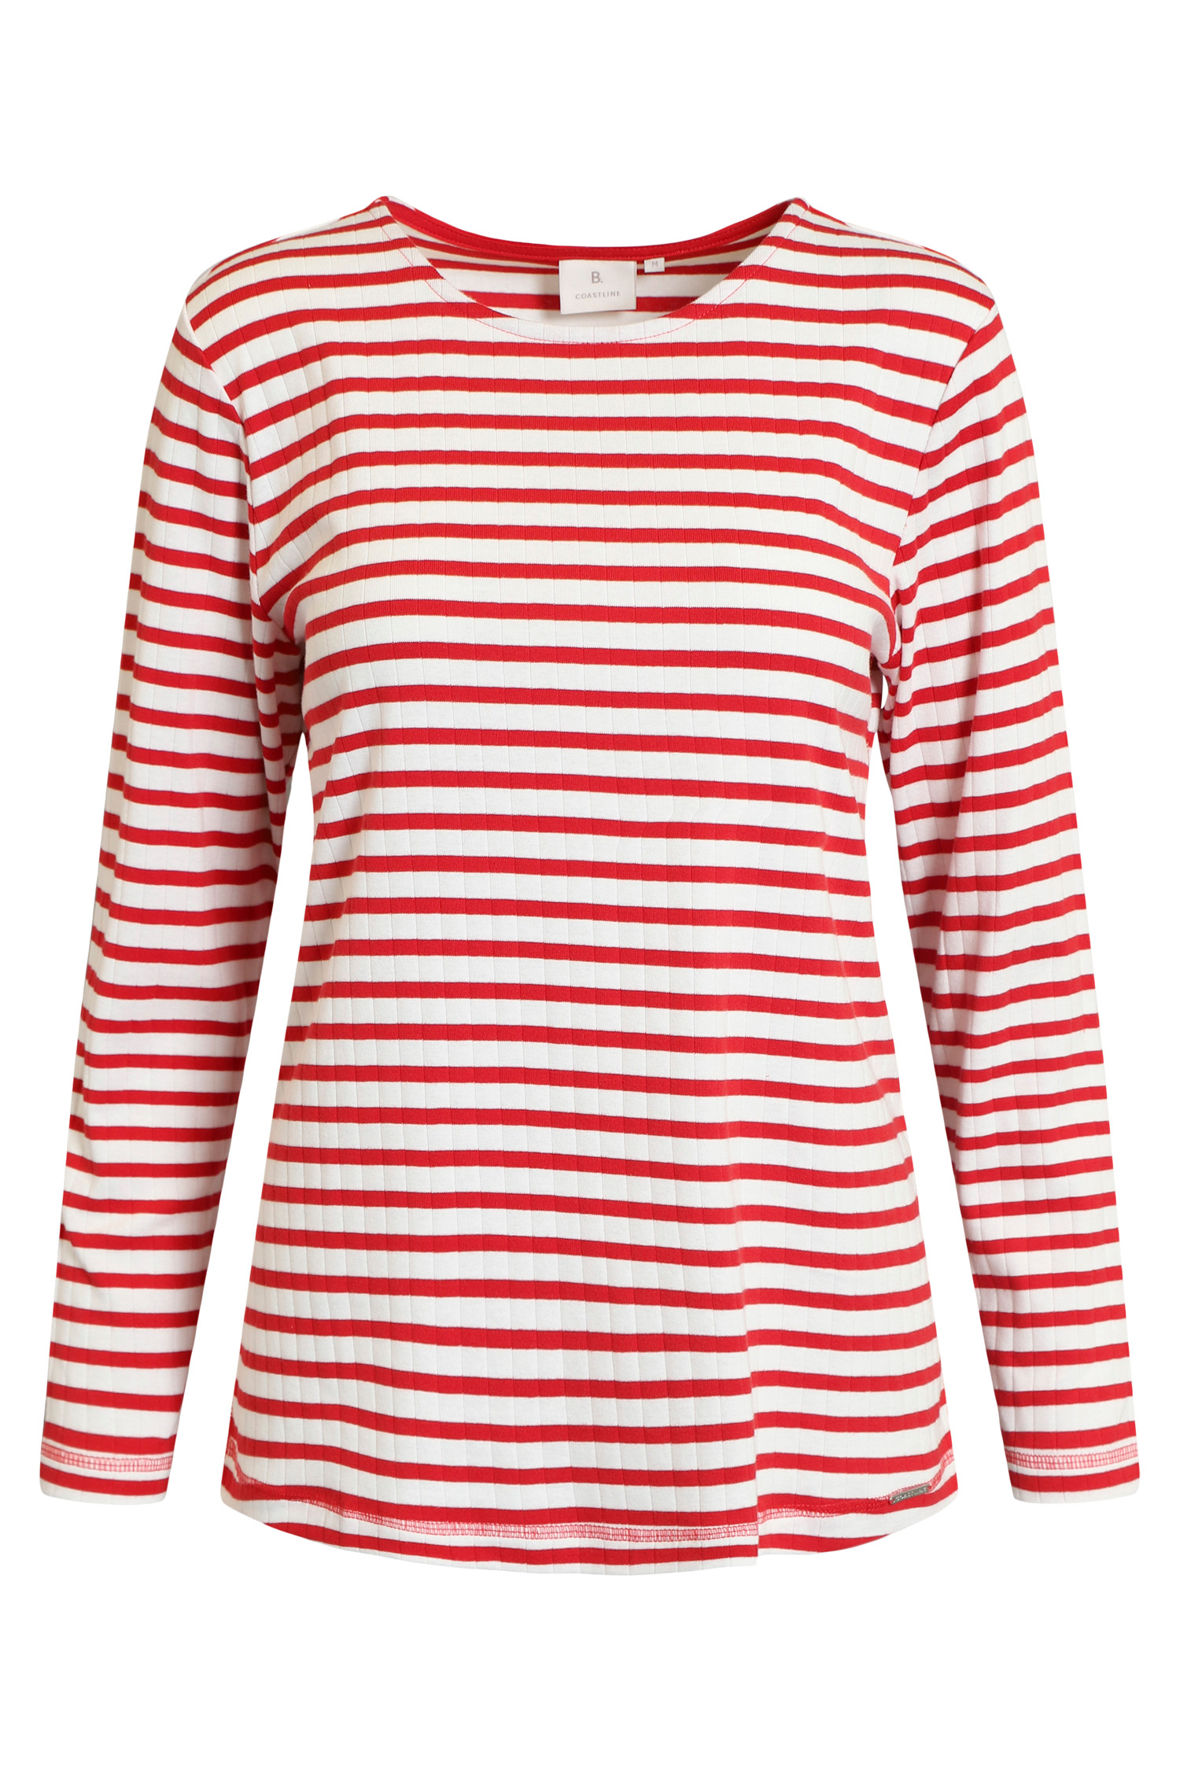 spejder fætter Thrust B. Coastline stribet casual langærmet t-shirt i rød og off white - Hos Lohse